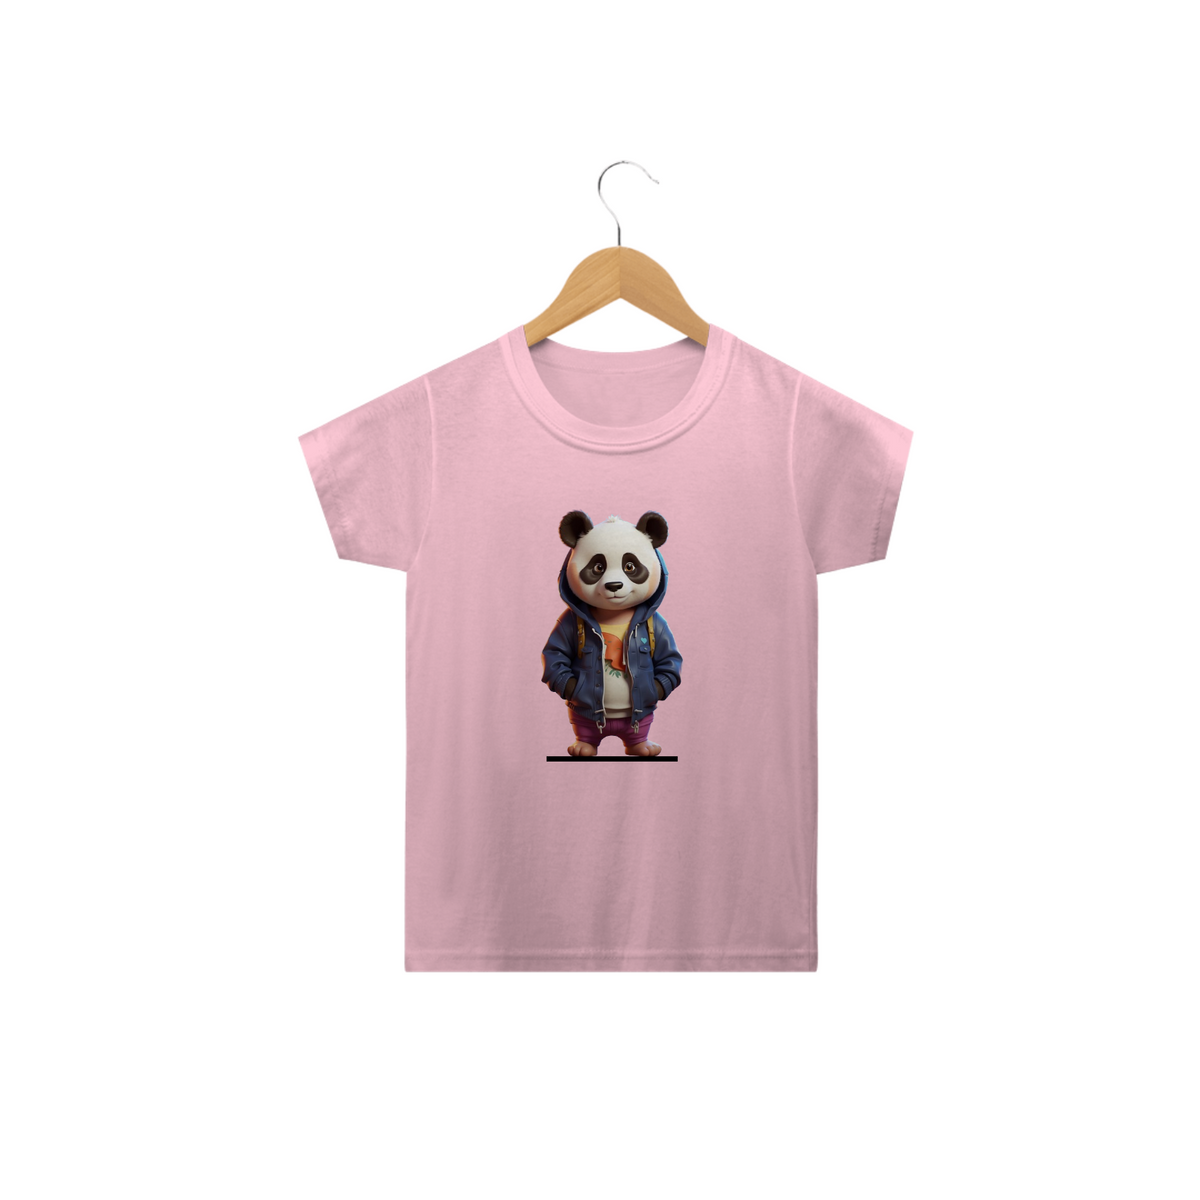 Nome do produto: Panda Playful: Abraça a Diversão com Estilo.